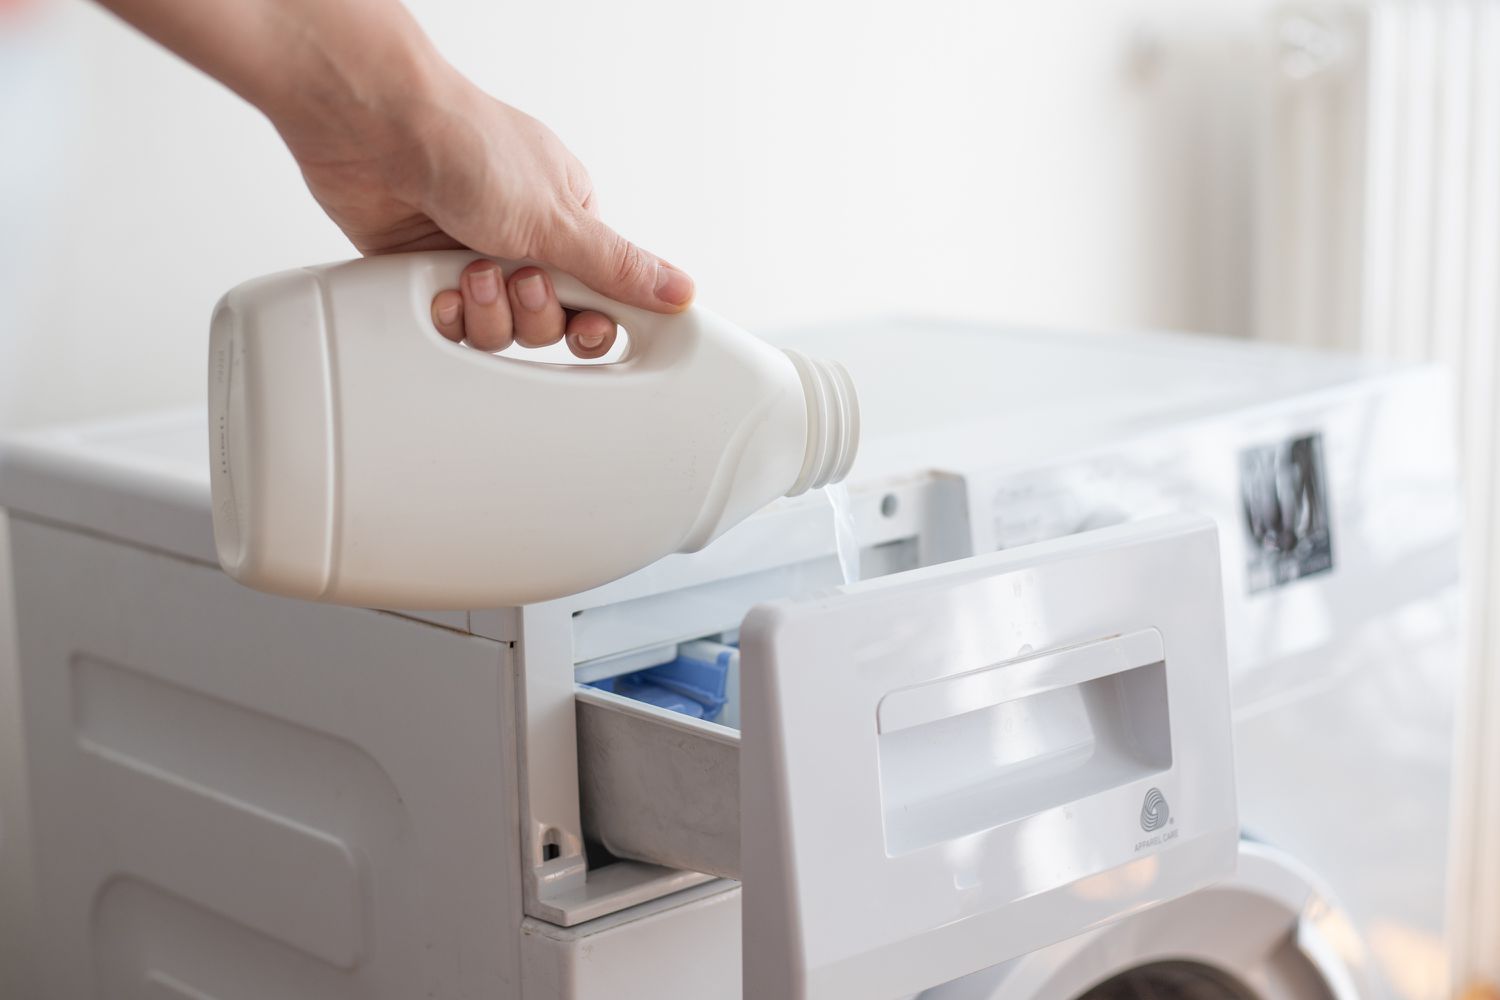 Alvejante com cloro despejado no dispensador da máquina de lavar para remover manchas de tinta